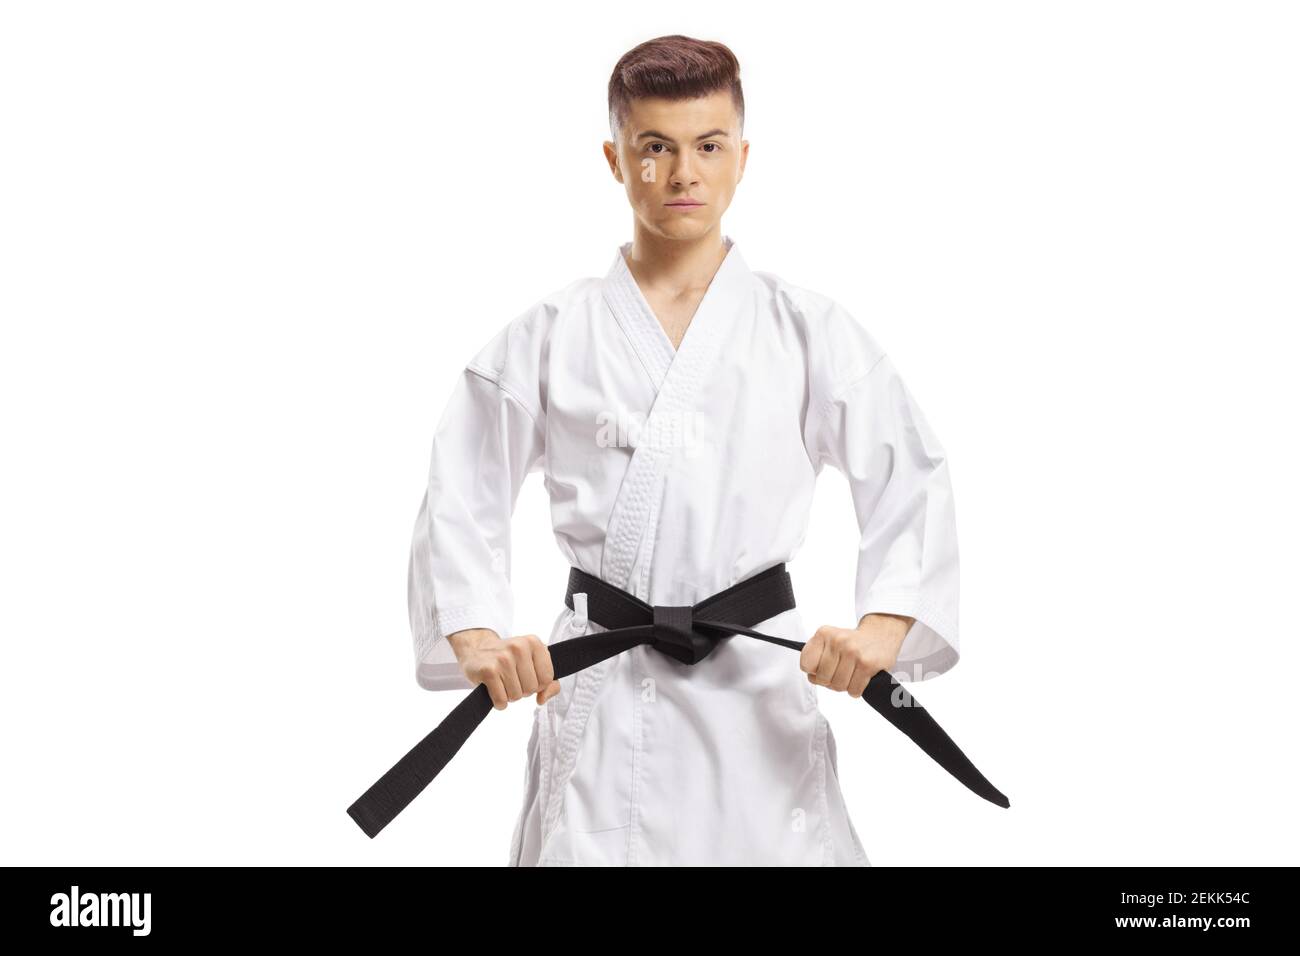 Kimono karate immagini e fotografie stock ad alta risoluzione - Alamy